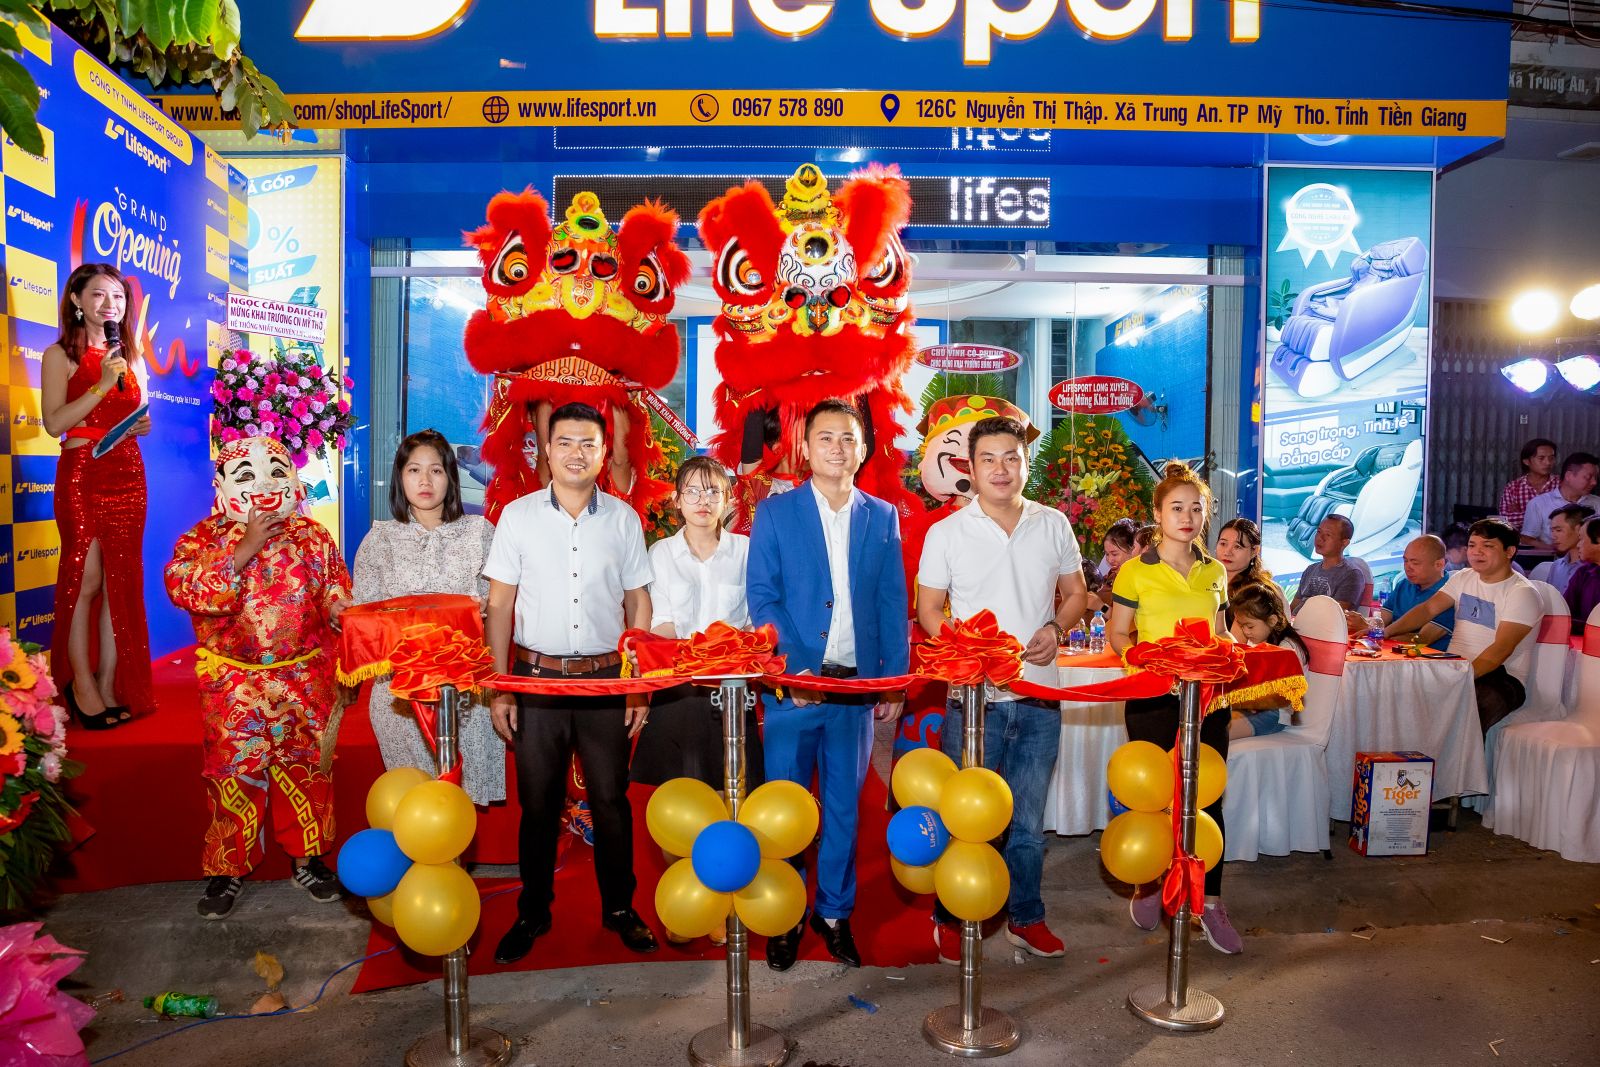 Lifesport Tiền Giang hỗ trợ trả góp với lãi suất 0%